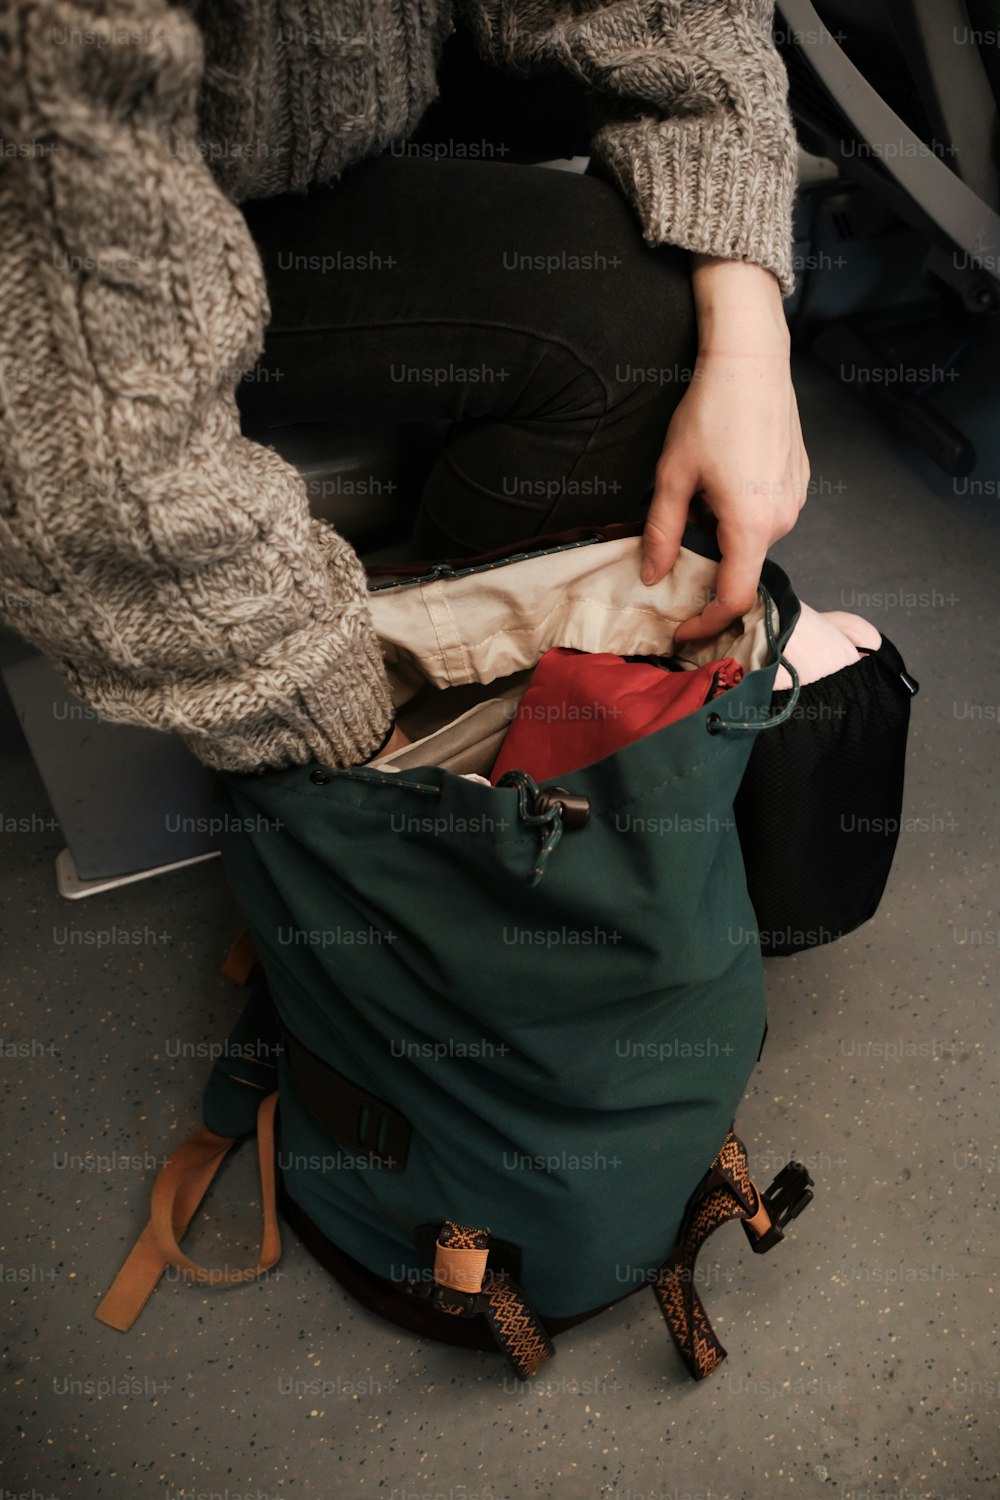 una persona poniendo una bolsa dentro de una bolsa